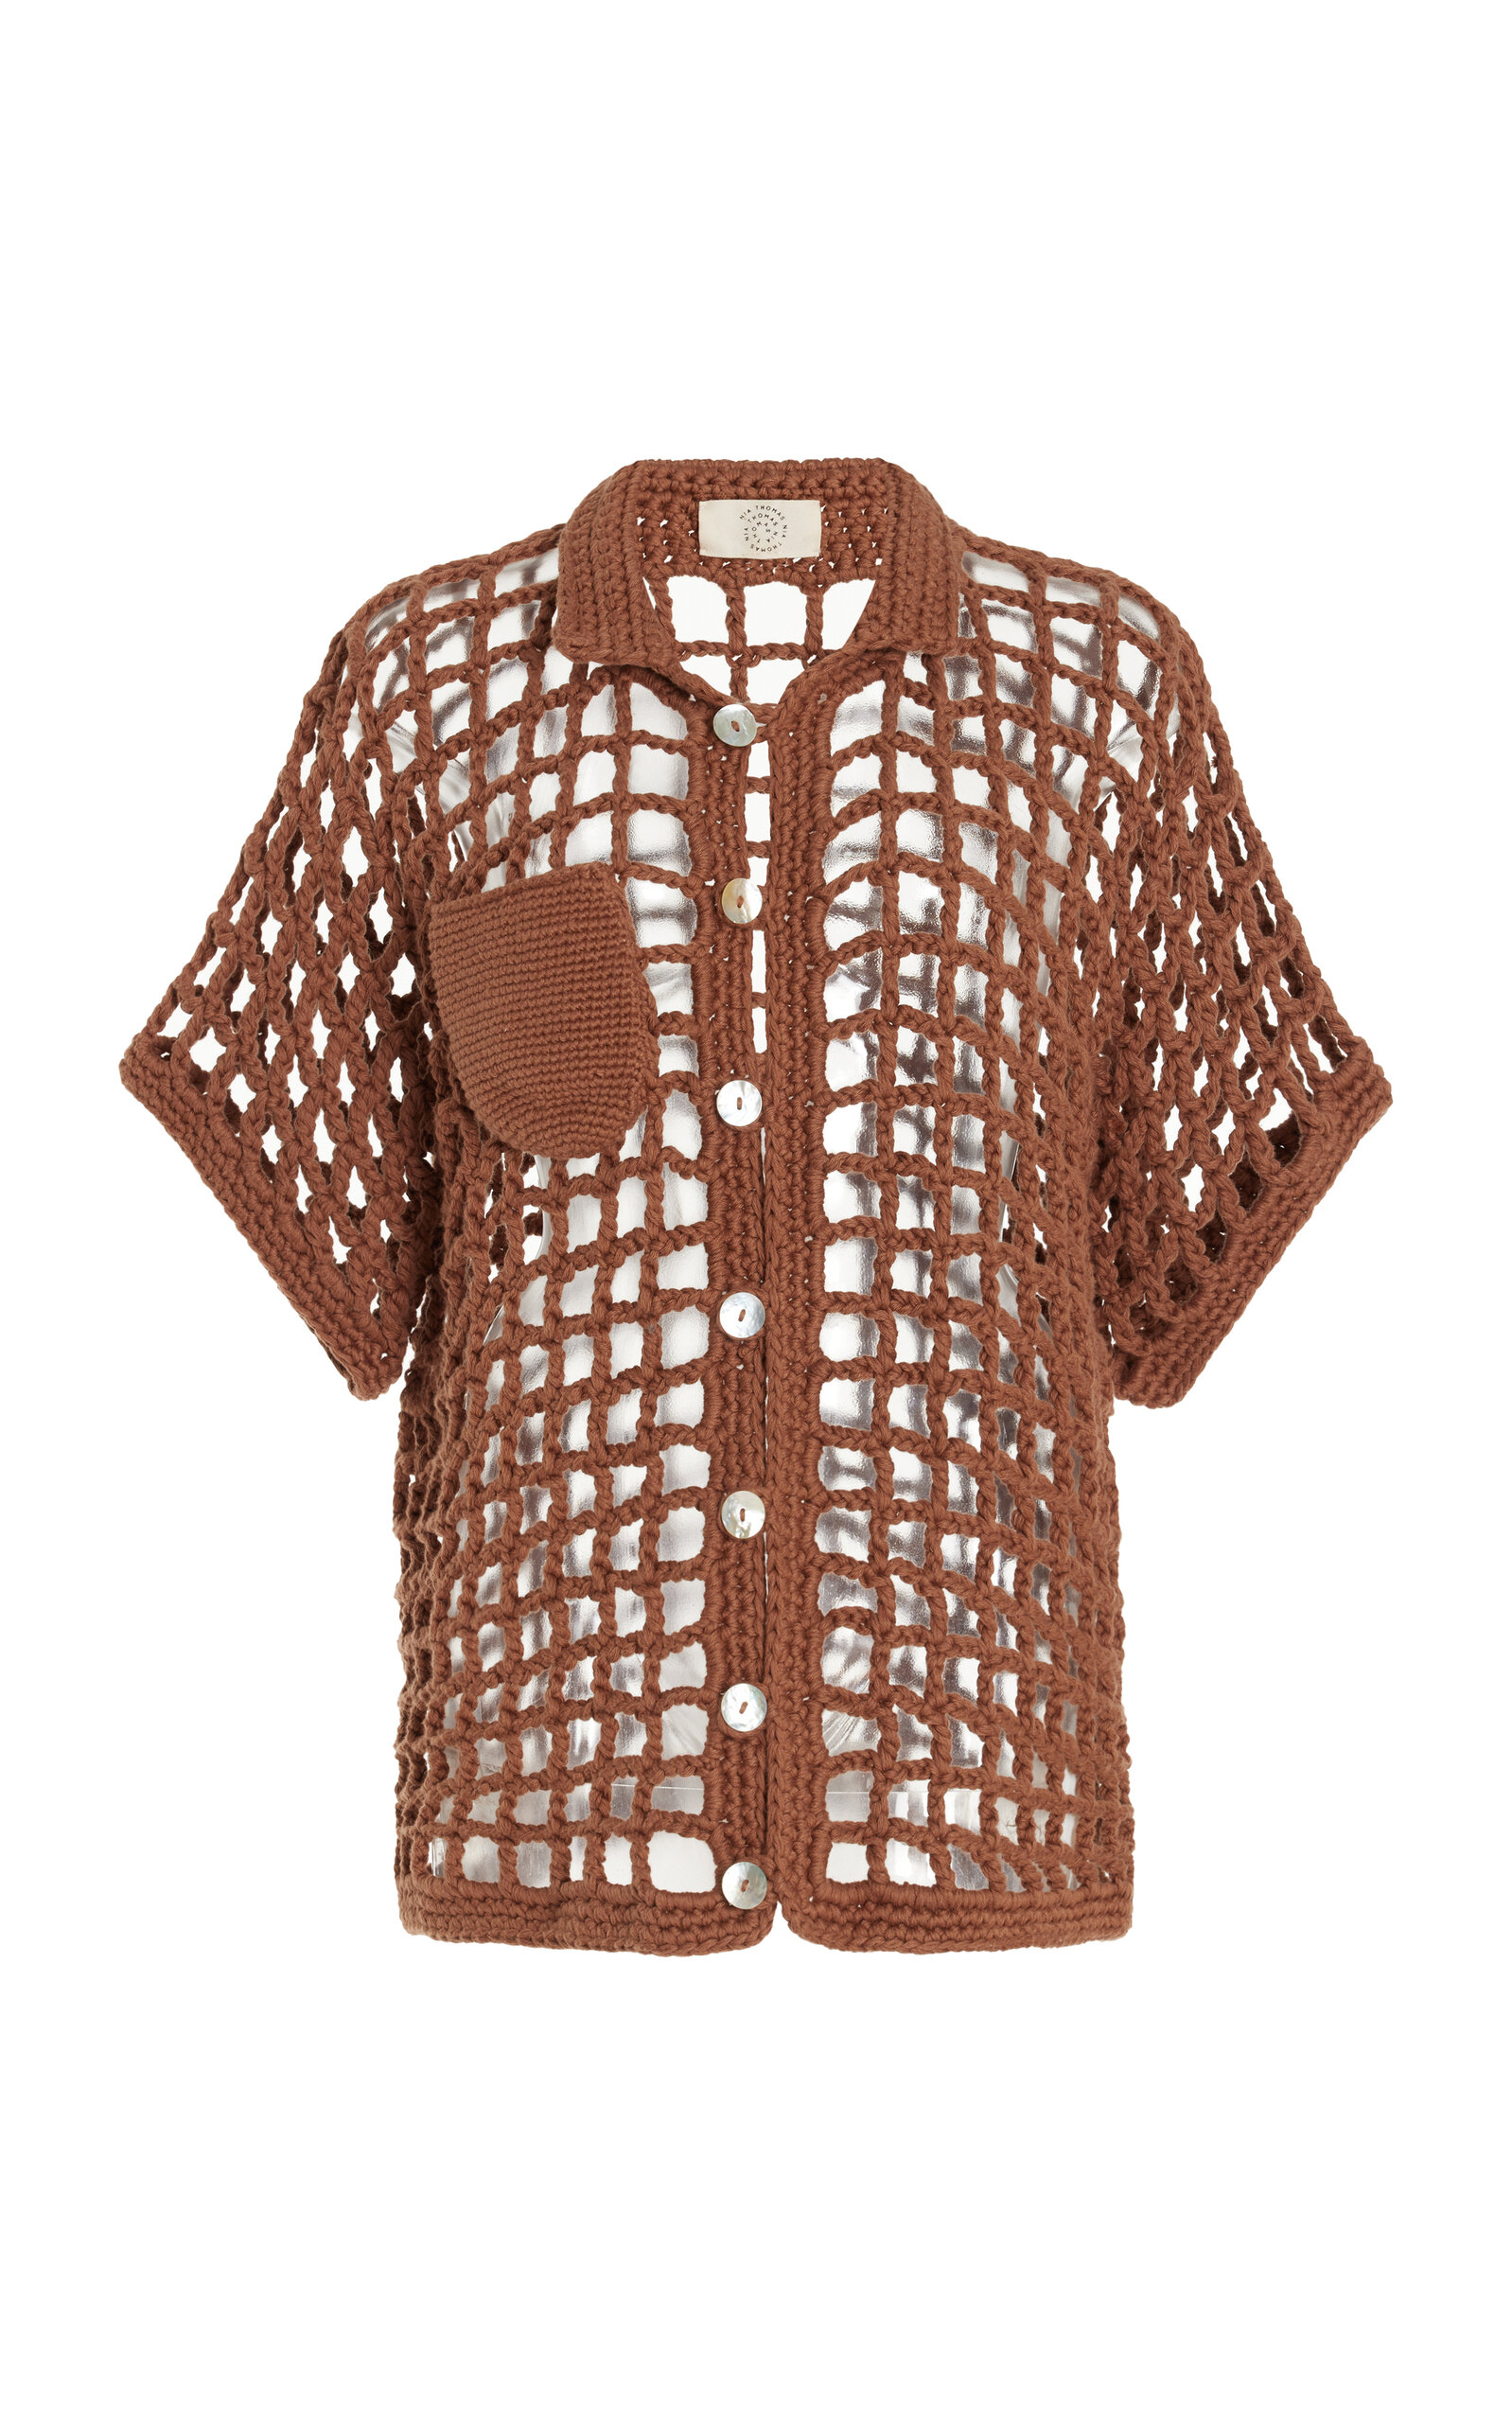 Sessa Crocheted Cotton Shirt